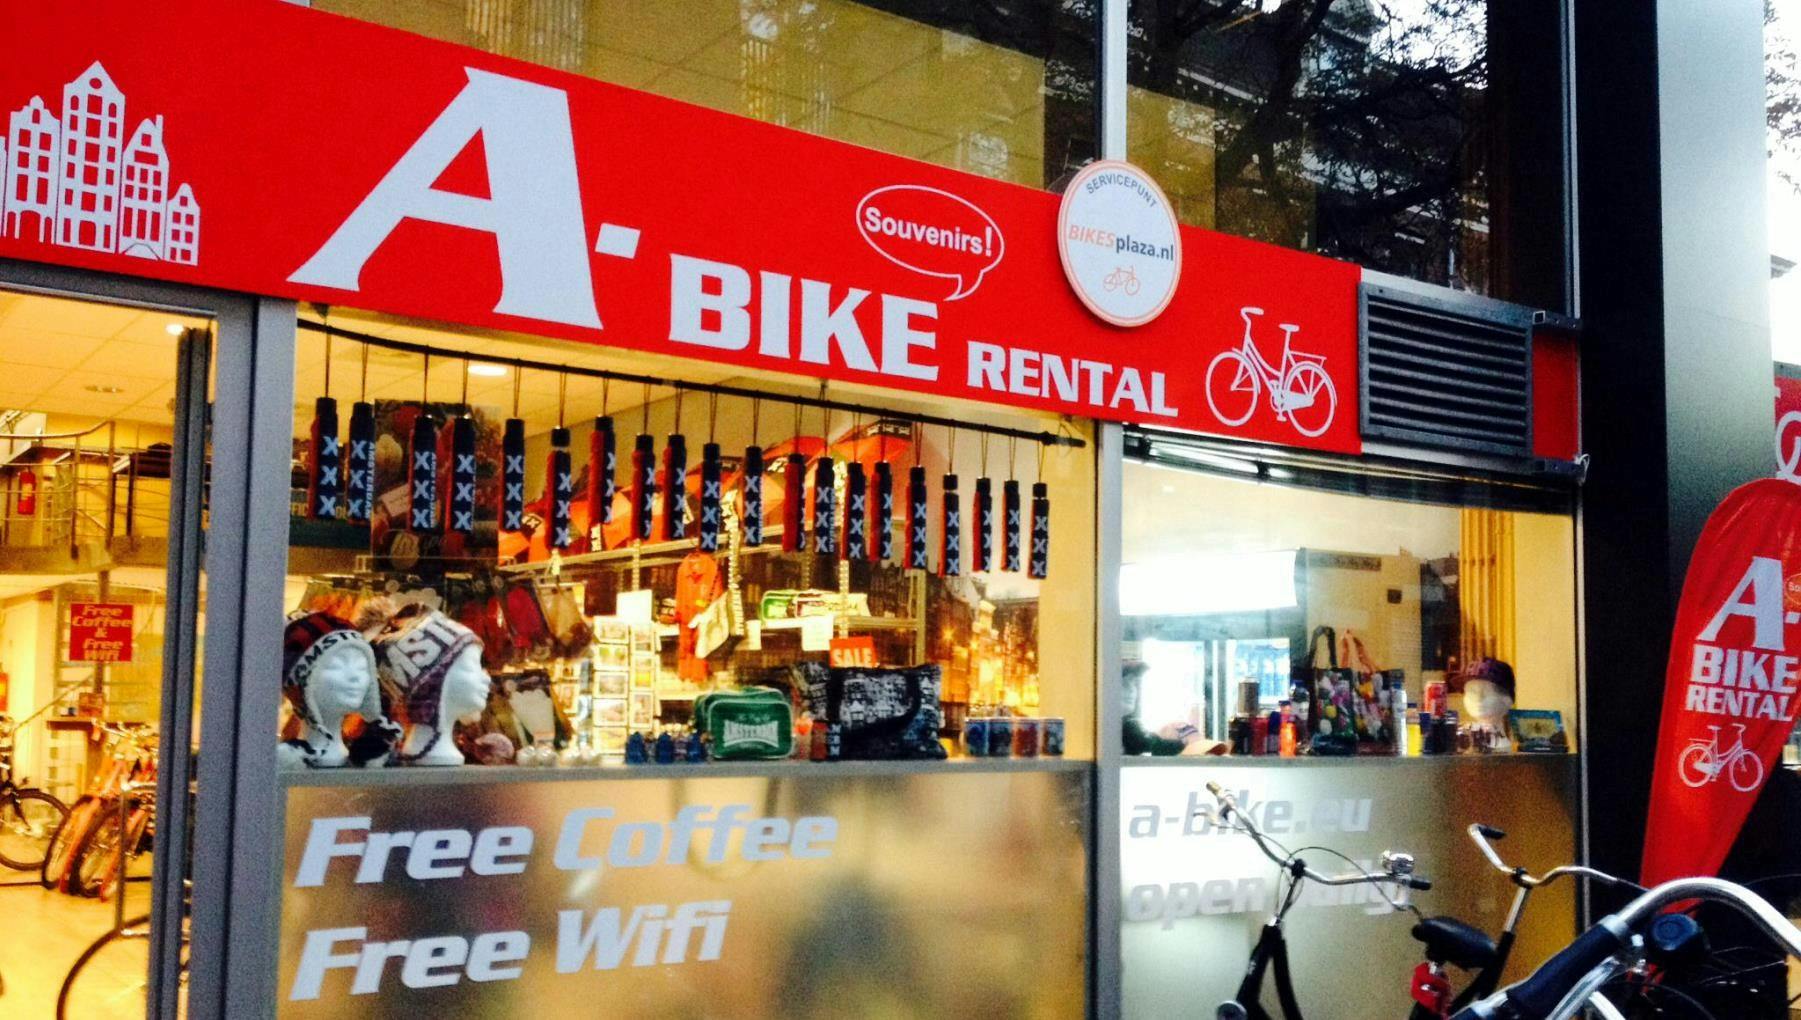 A-Bike Rental Oosterdoksstraat